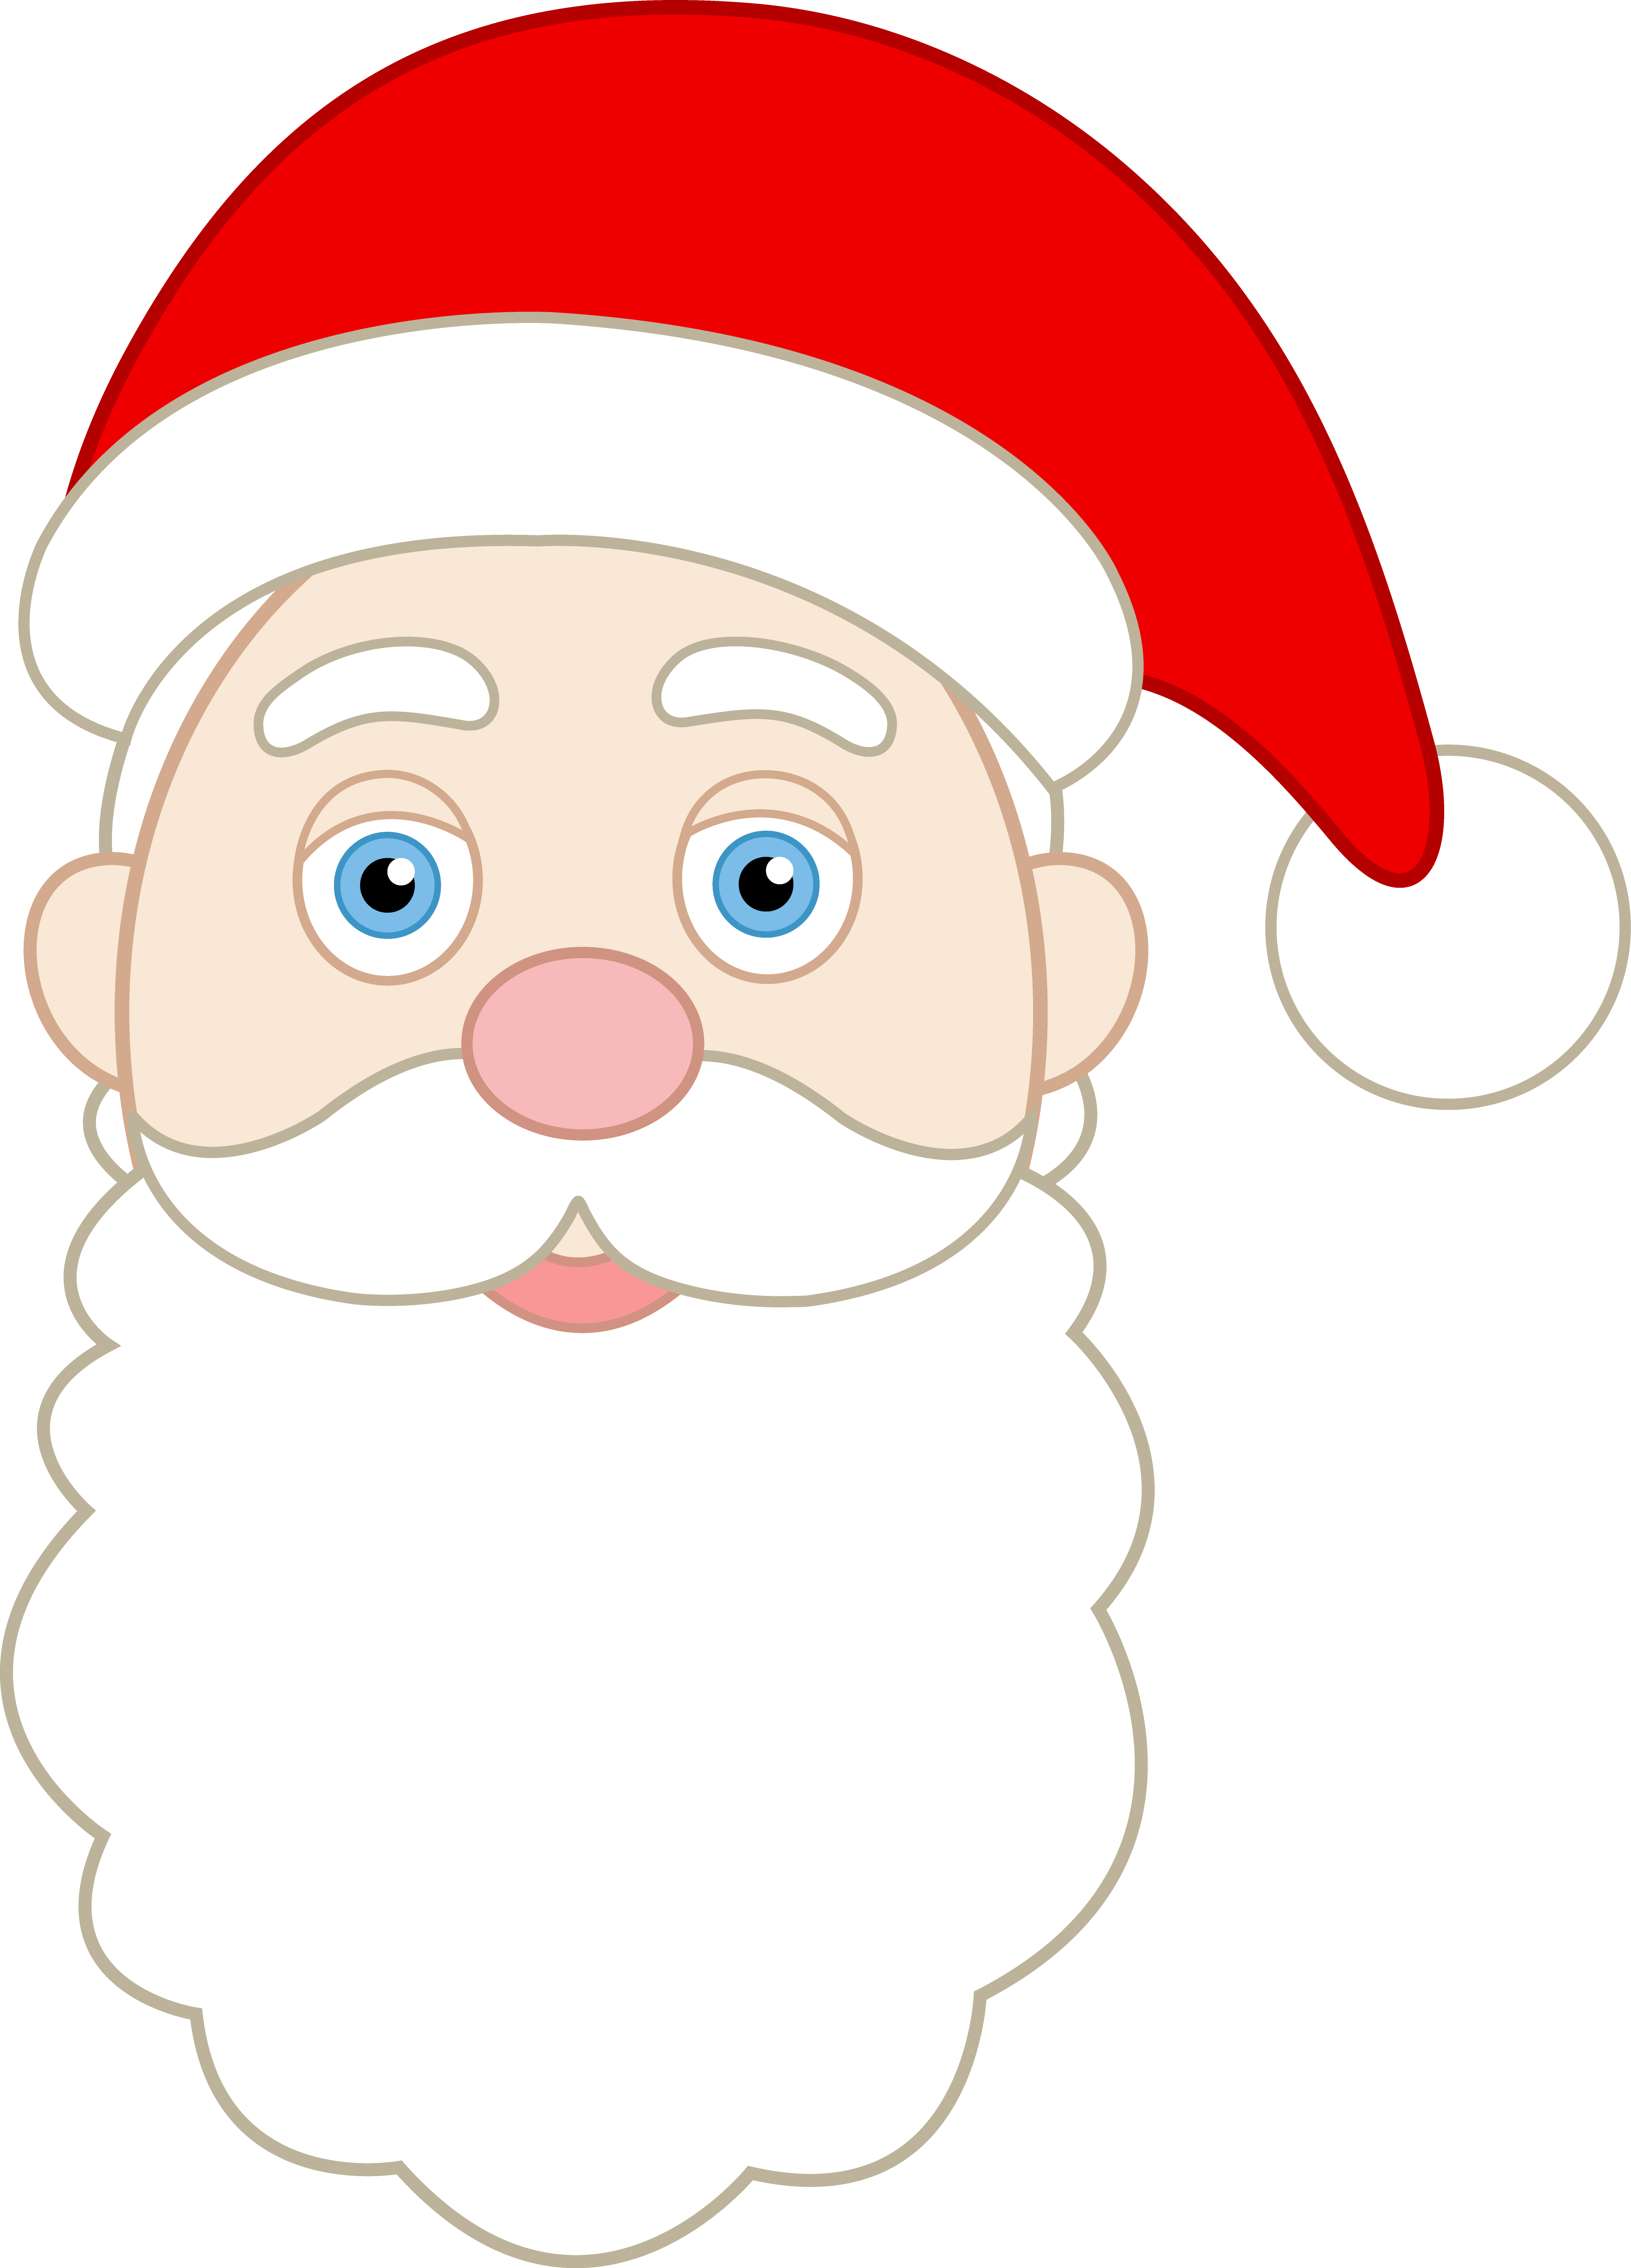 Santa claus face clipart head